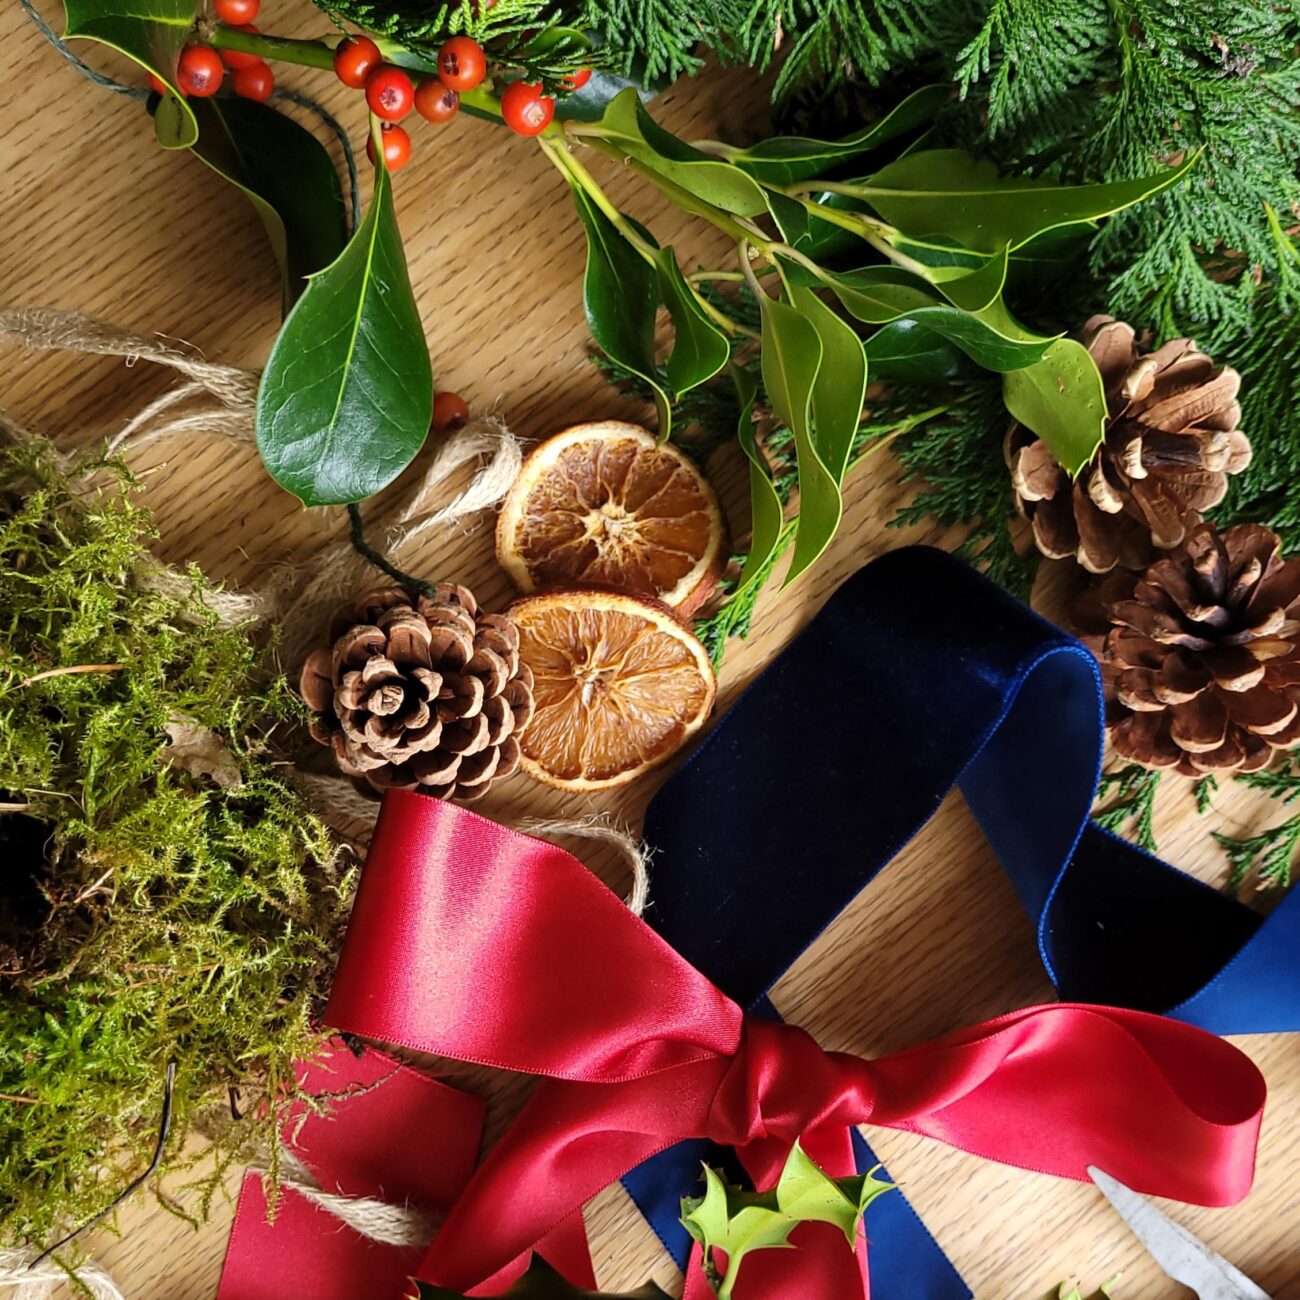 Christmas wreath items